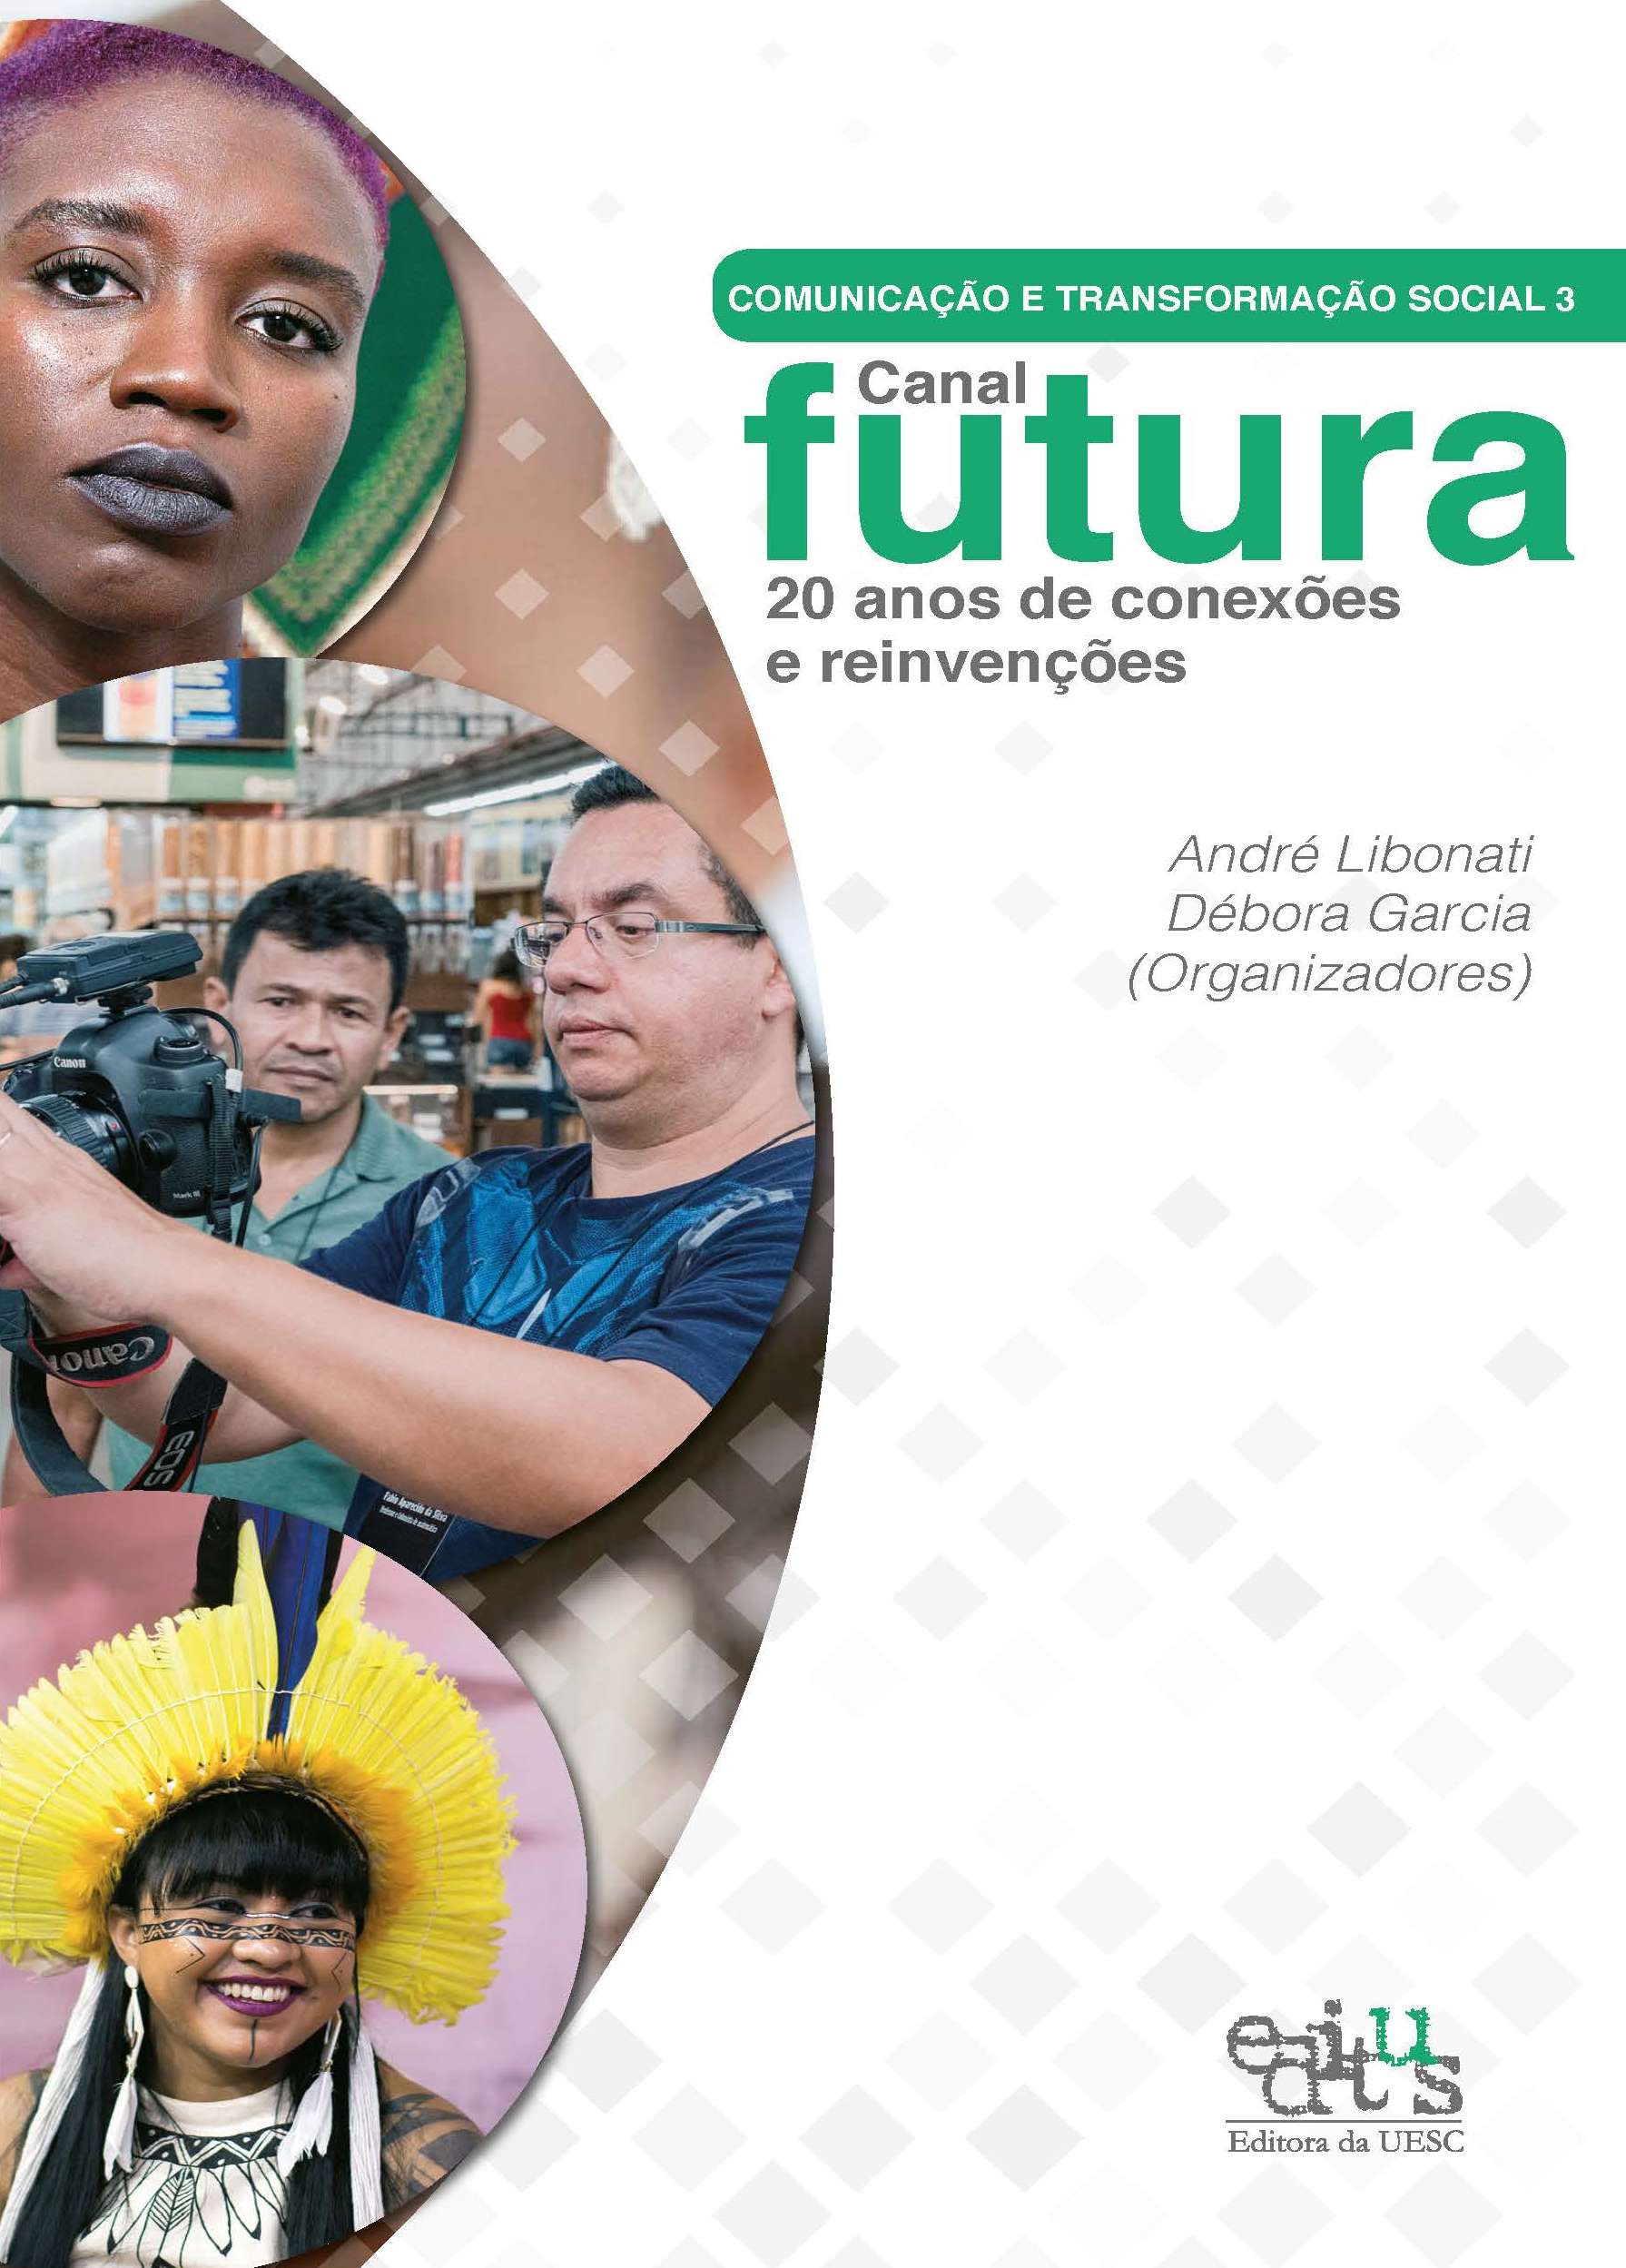 Comunicação e transformação social 3 - Canal Futura - 20 anos de conexões e reinvenções, livro de André Libonati, Débora Garcia